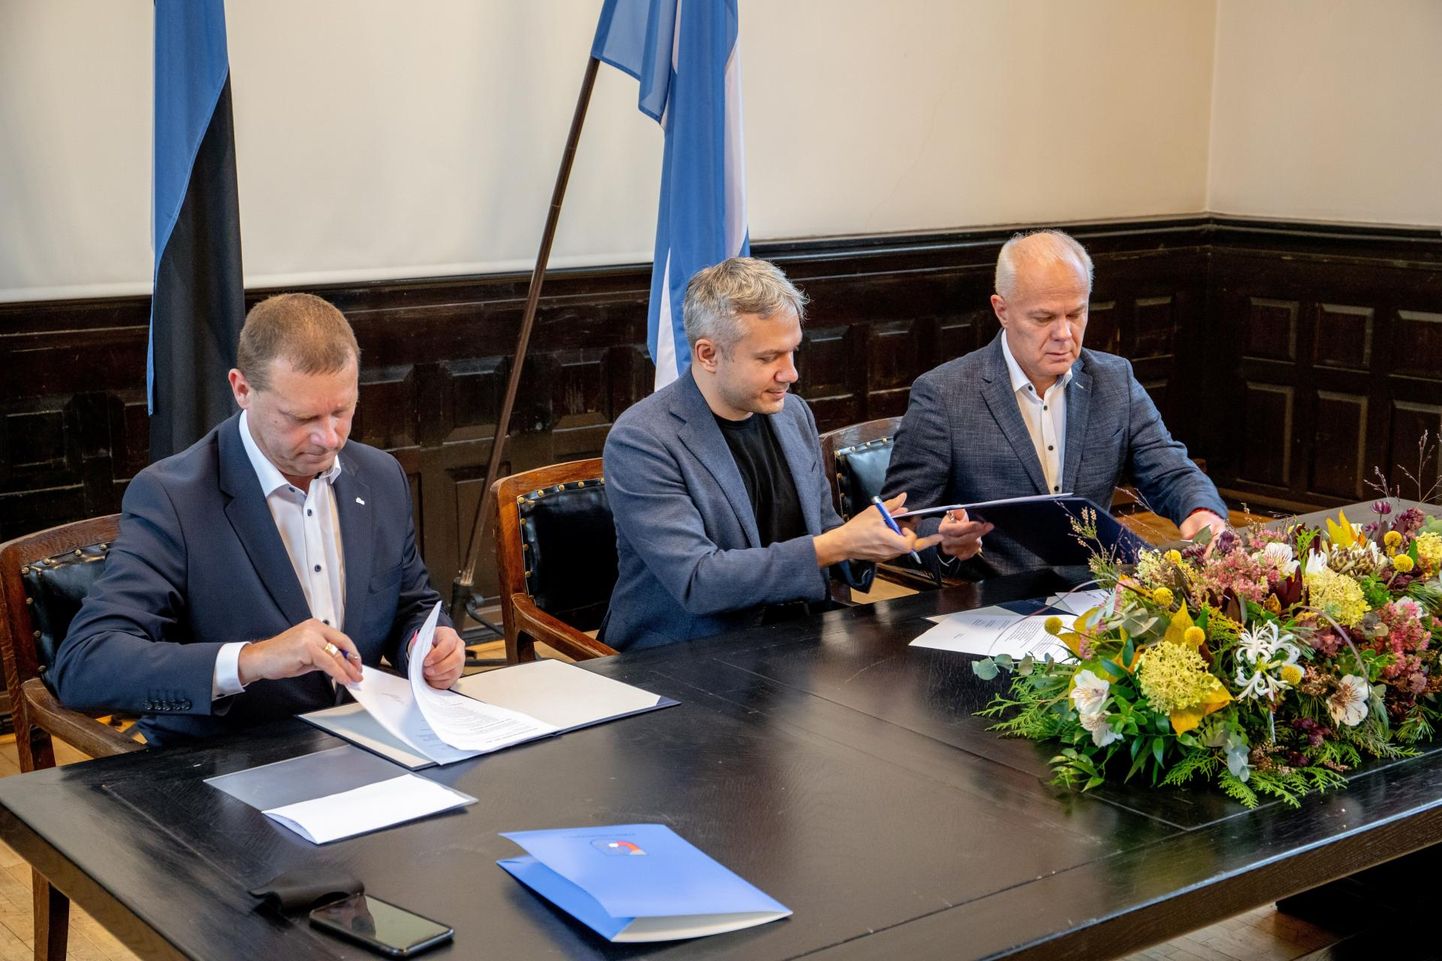 Подписание коалиционного договора между избирательным союзом Pärnu ühendab, Центристской партии и Партии реформ.